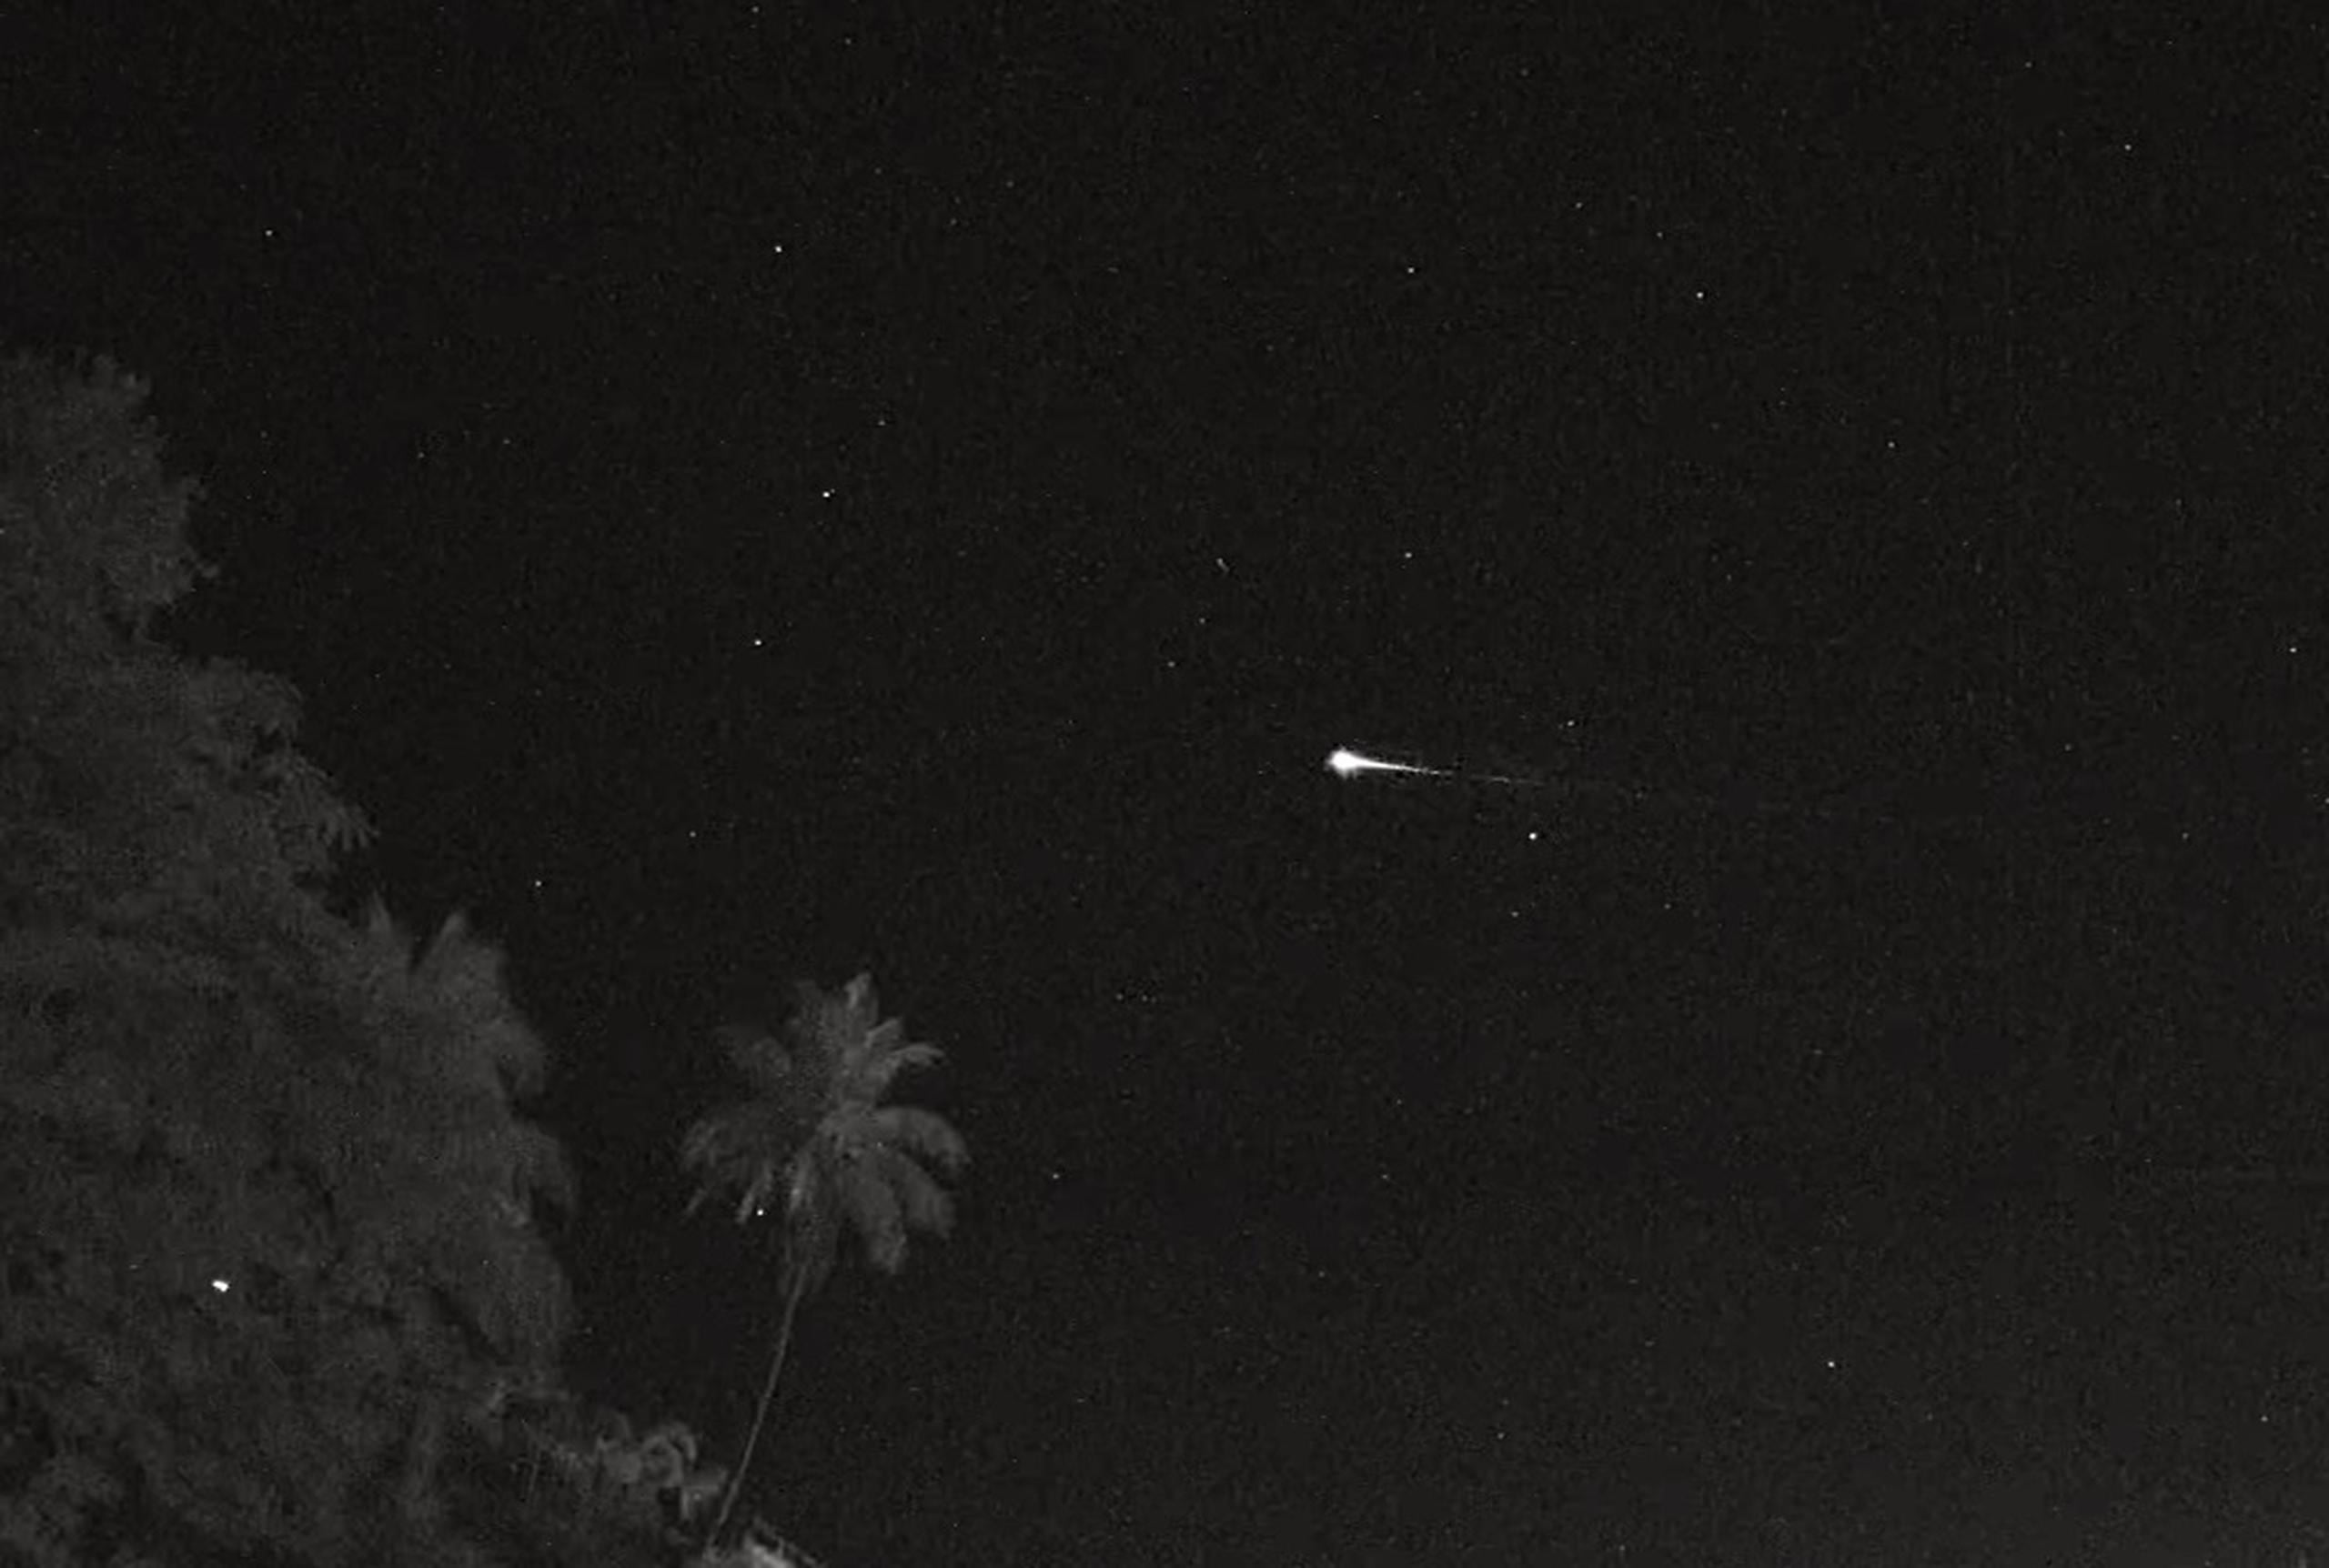 Se trató de un “meteoro rozante” que fue visible mirando hacia el norte.